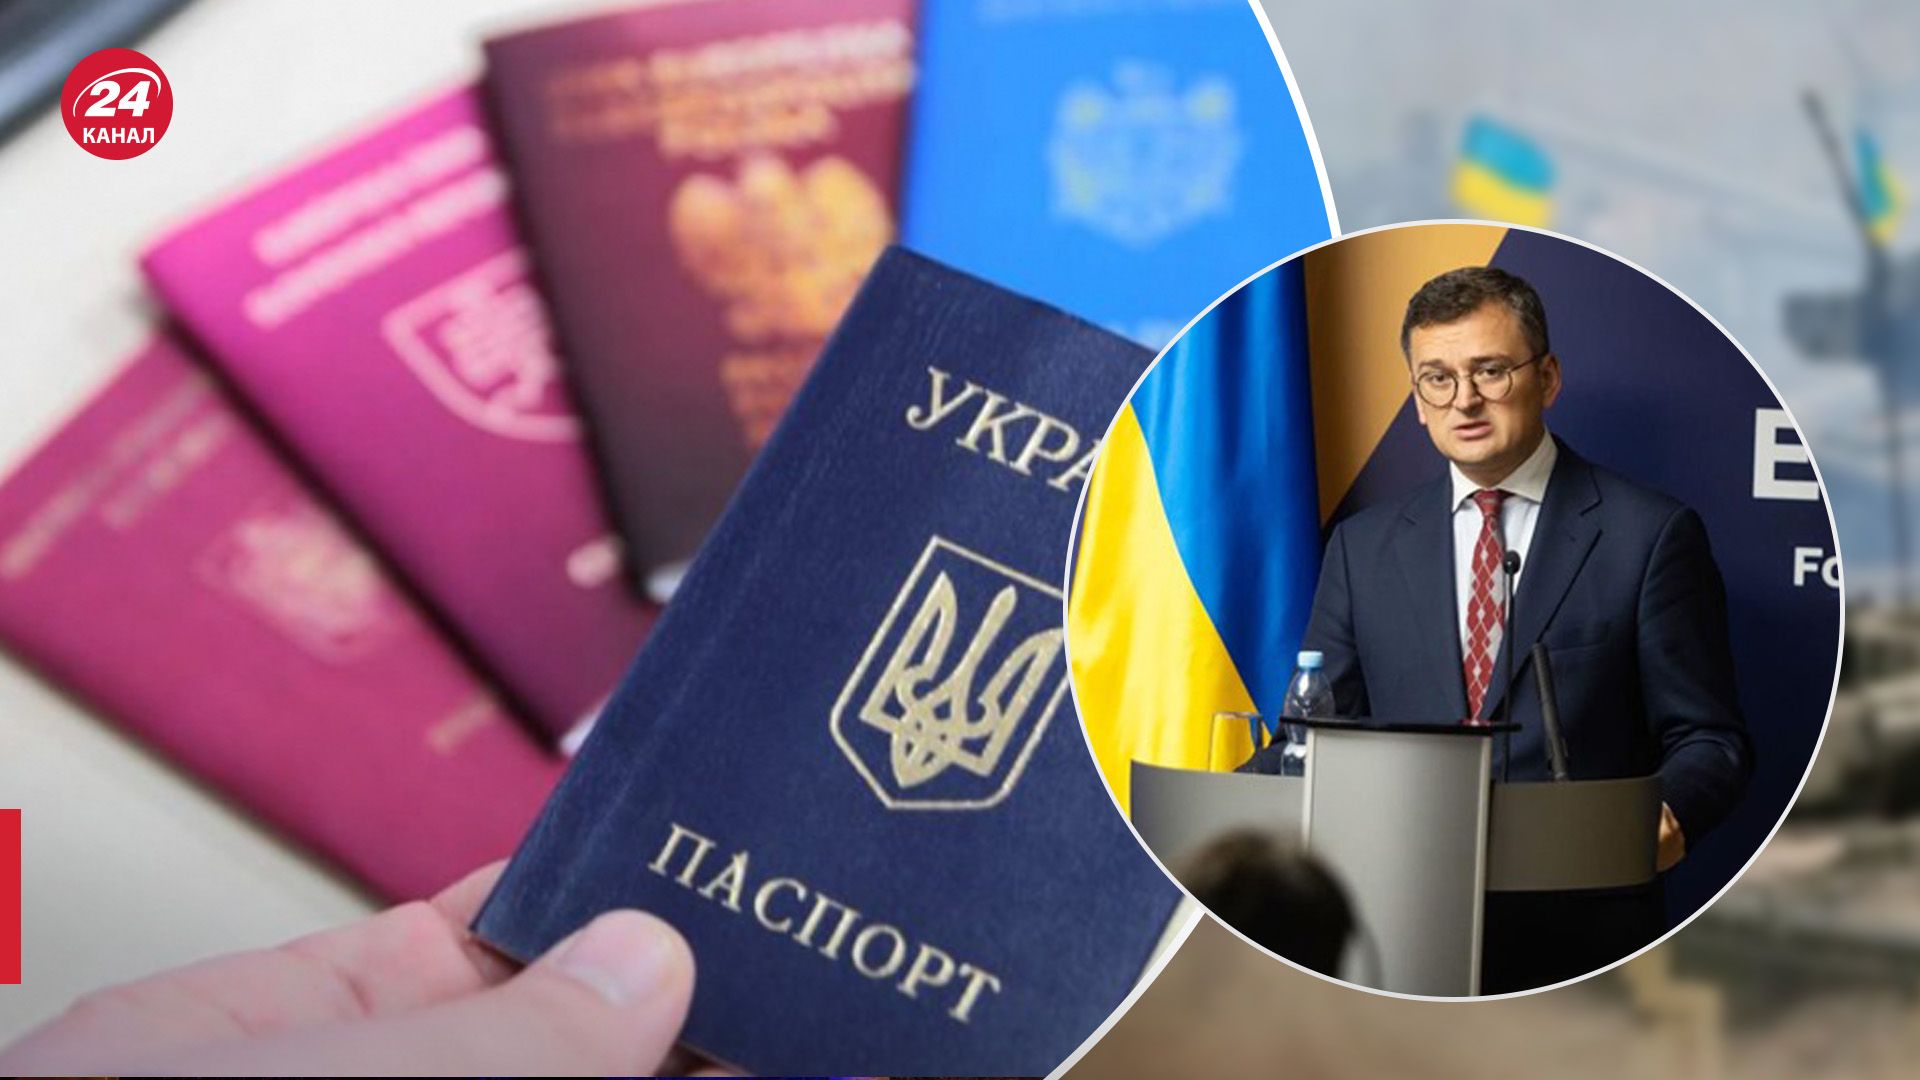 Украинцам за границей следует разрешить хранить паспорт: Кулеба поддержал множественное гражданство - 24 Канал